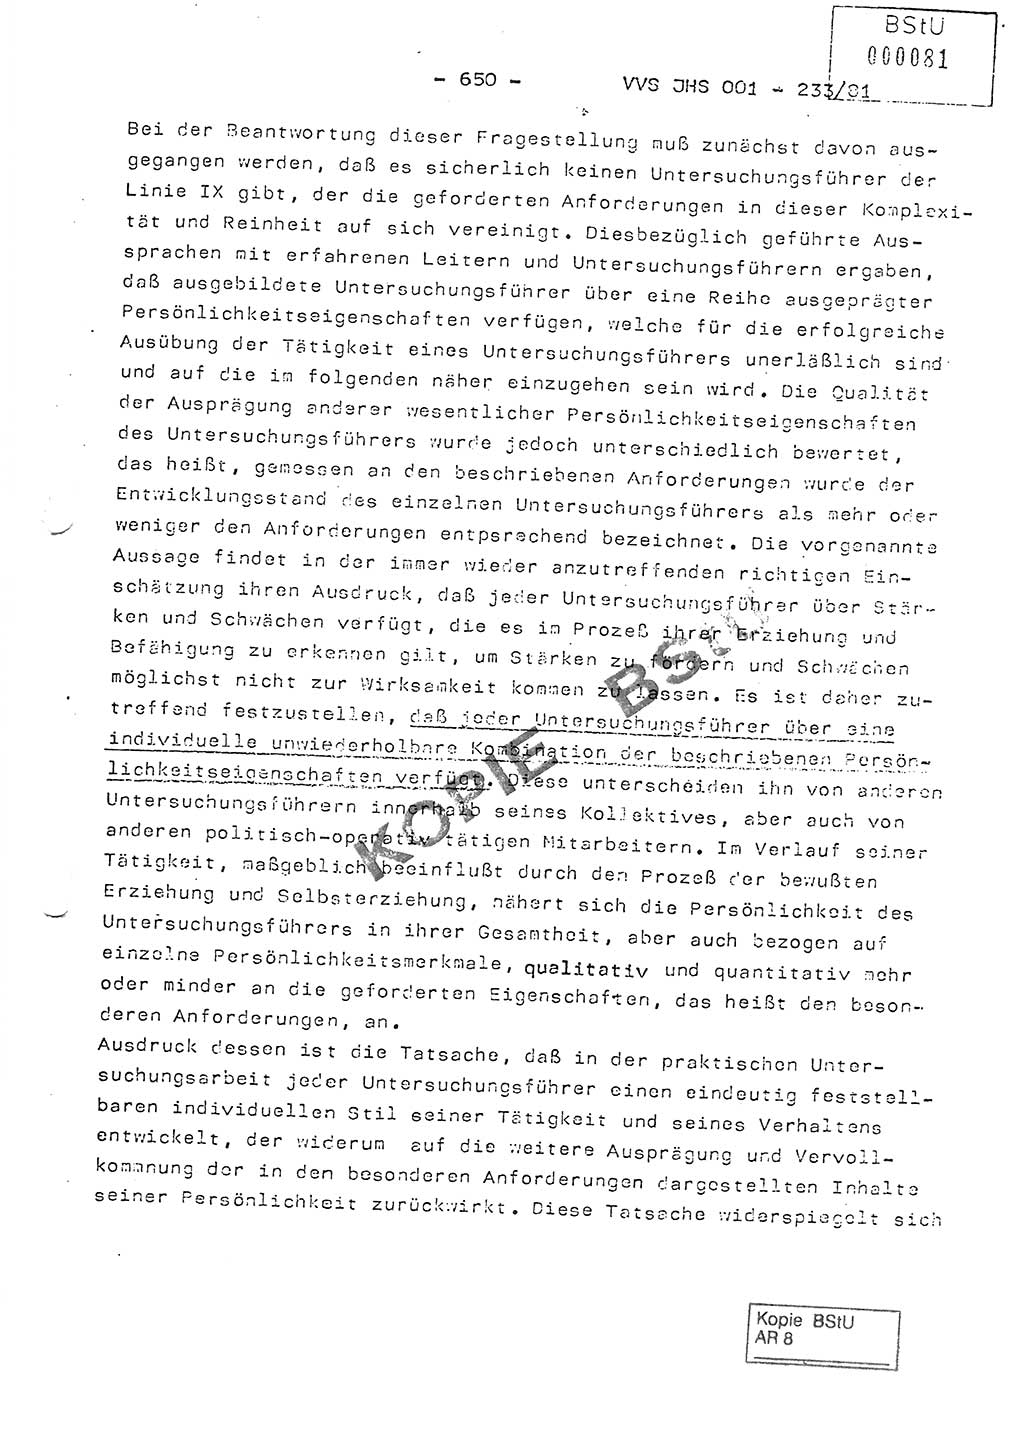 Dissertation Oberstleutnant Horst Zank (JHS), Oberstleutnant Dr. Karl-Heinz Knoblauch (JHS), Oberstleutnant Gustav-Adolf Kowalewski (HA Ⅸ), Oberstleutnant Wolfgang Plötner (HA Ⅸ), Ministerium für Staatssicherheit (MfS) [Deutsche Demokratische Republik (DDR)], Juristische Hochschule (JHS), Vertrauliche Verschlußsache (VVS) o001-233/81, Potsdam 1981, Blatt 650 (Diss. MfS DDR JHS VVS o001-233/81 1981, Bl. 650)